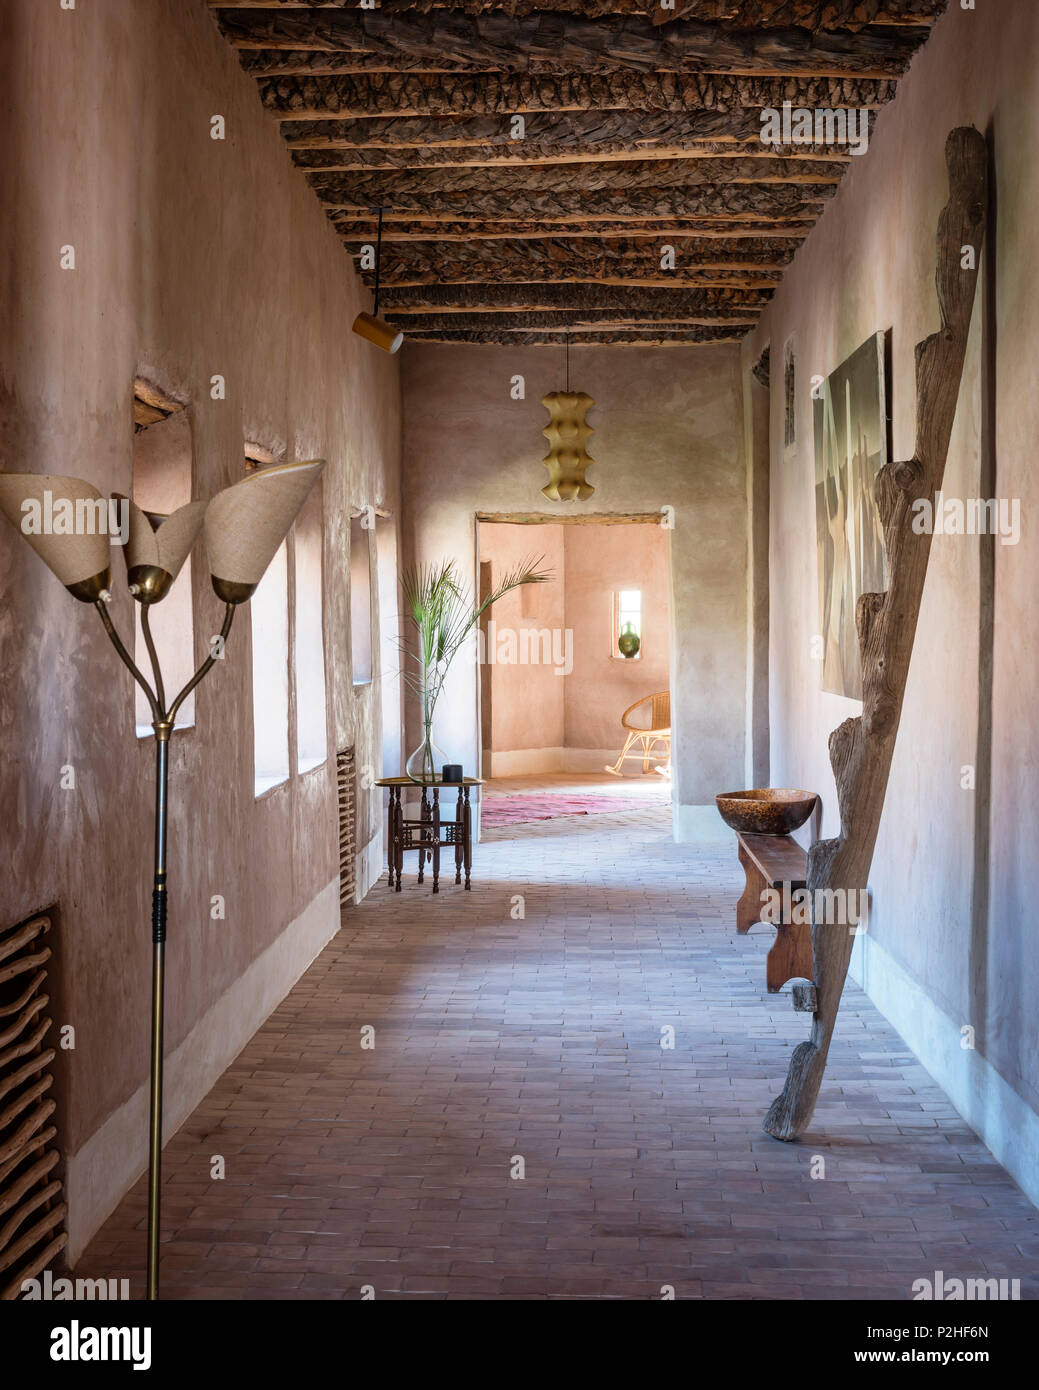 Holz- Berber-stil Decke und Terrakottaböden im Korridor mit rustikalen Leiter Stockfoto